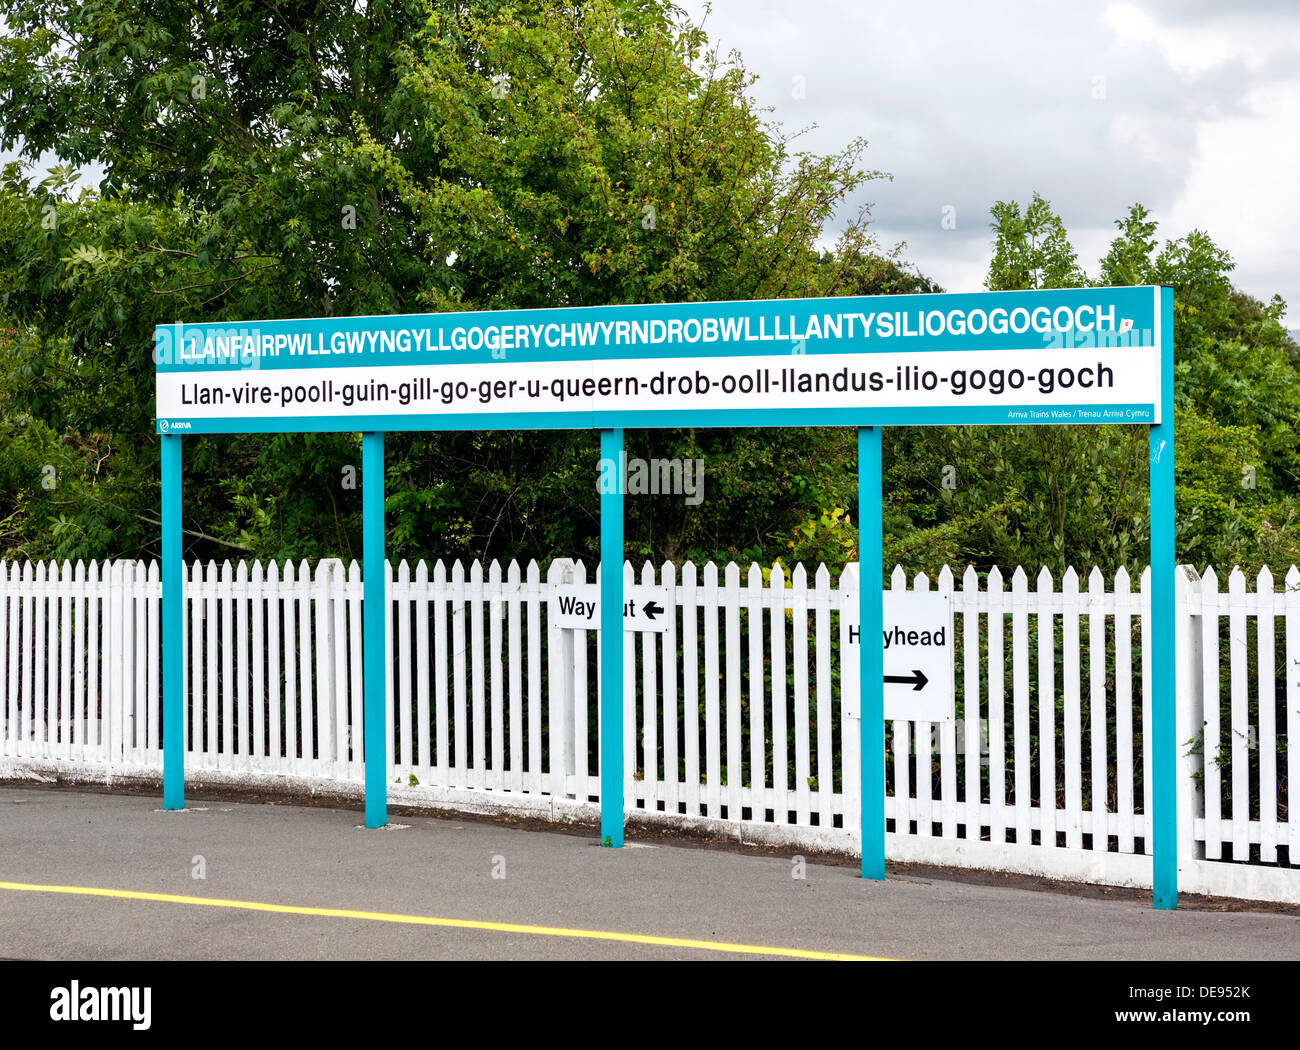 Stazione per il segno più a lungo il nome del luogo nel Regno Unito, Llanfairpwllgwyngyllgogerychwyrndrobwllllantysiliogogogoch, Anglesey, Galles, Regno Unito Foto Stock